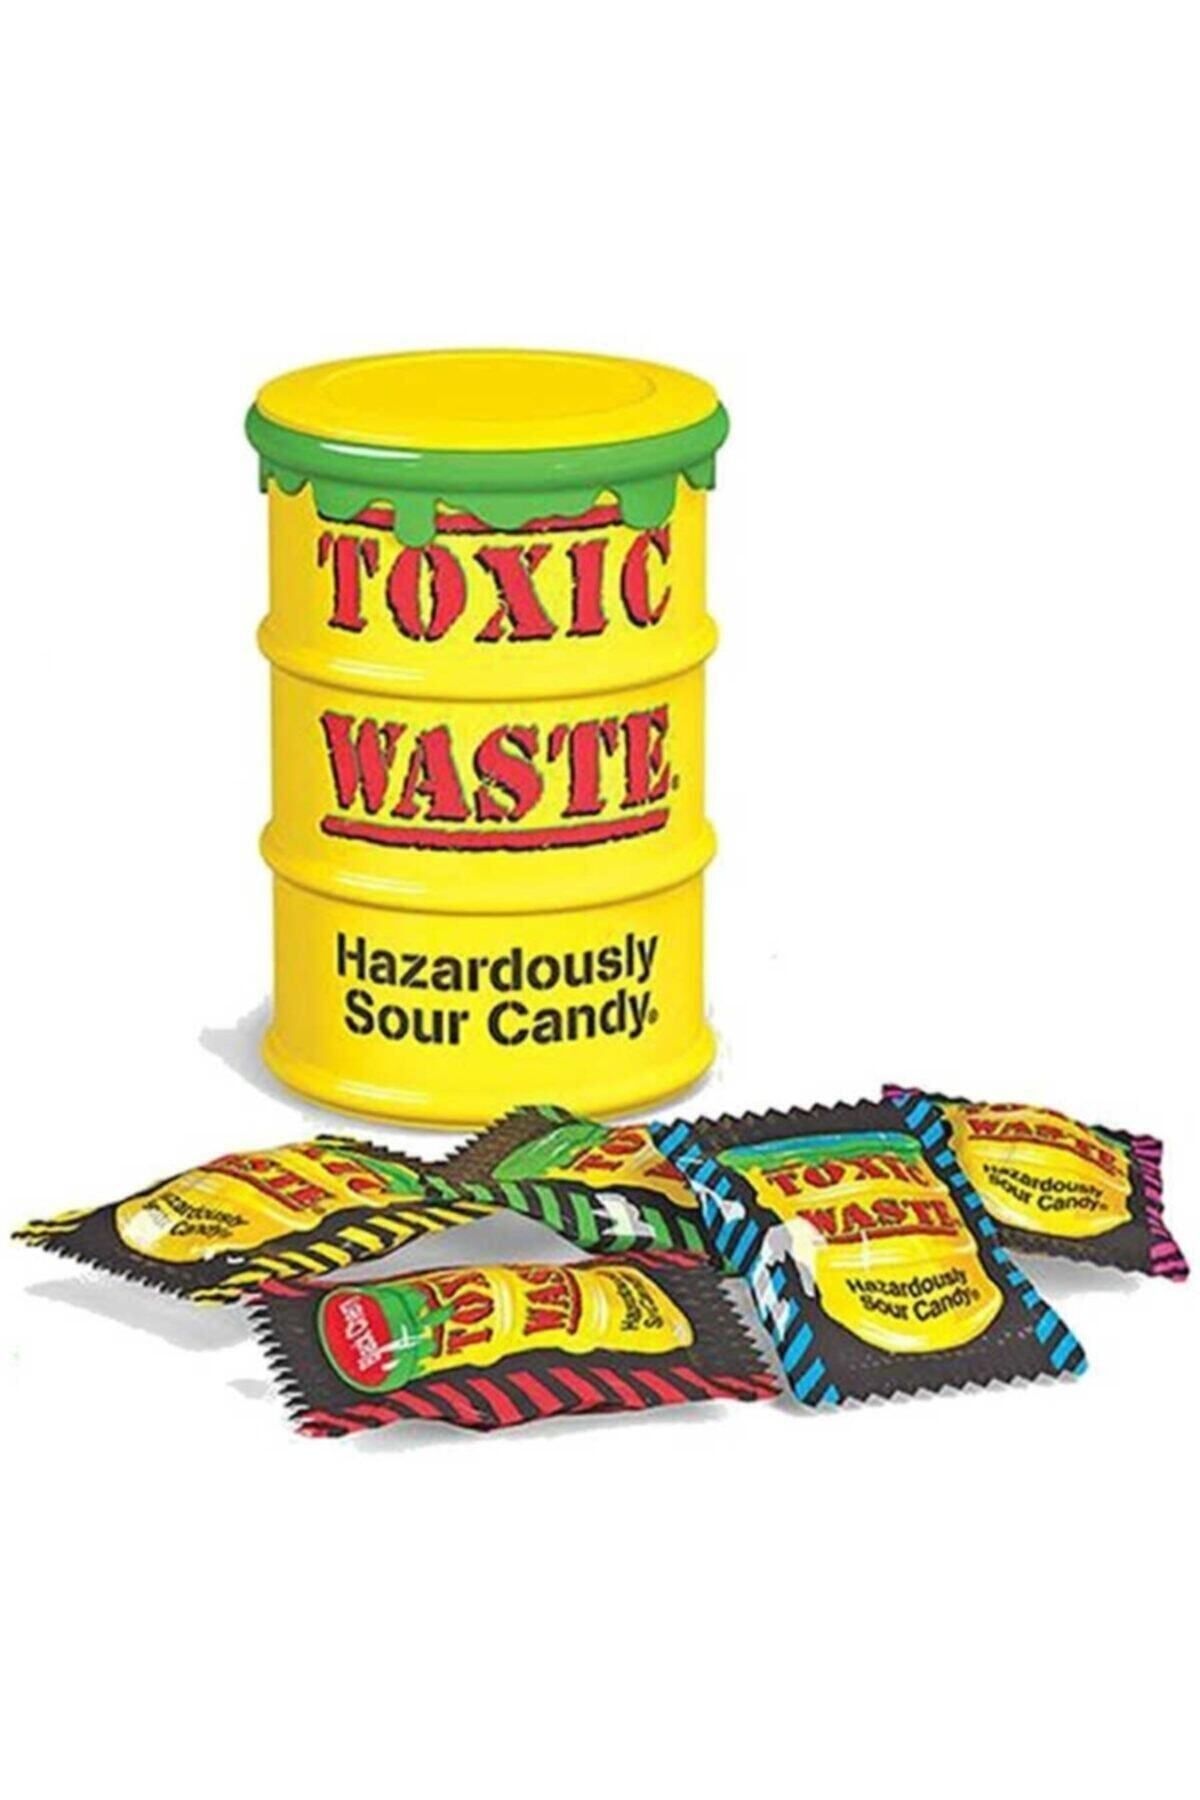 Токсик вейст. Toxic waste конфеты. Кислые конфеты Токсик. Токсик Вейст самые кислые конфеты. Самые кислые конфеты в мире Toxic waste.